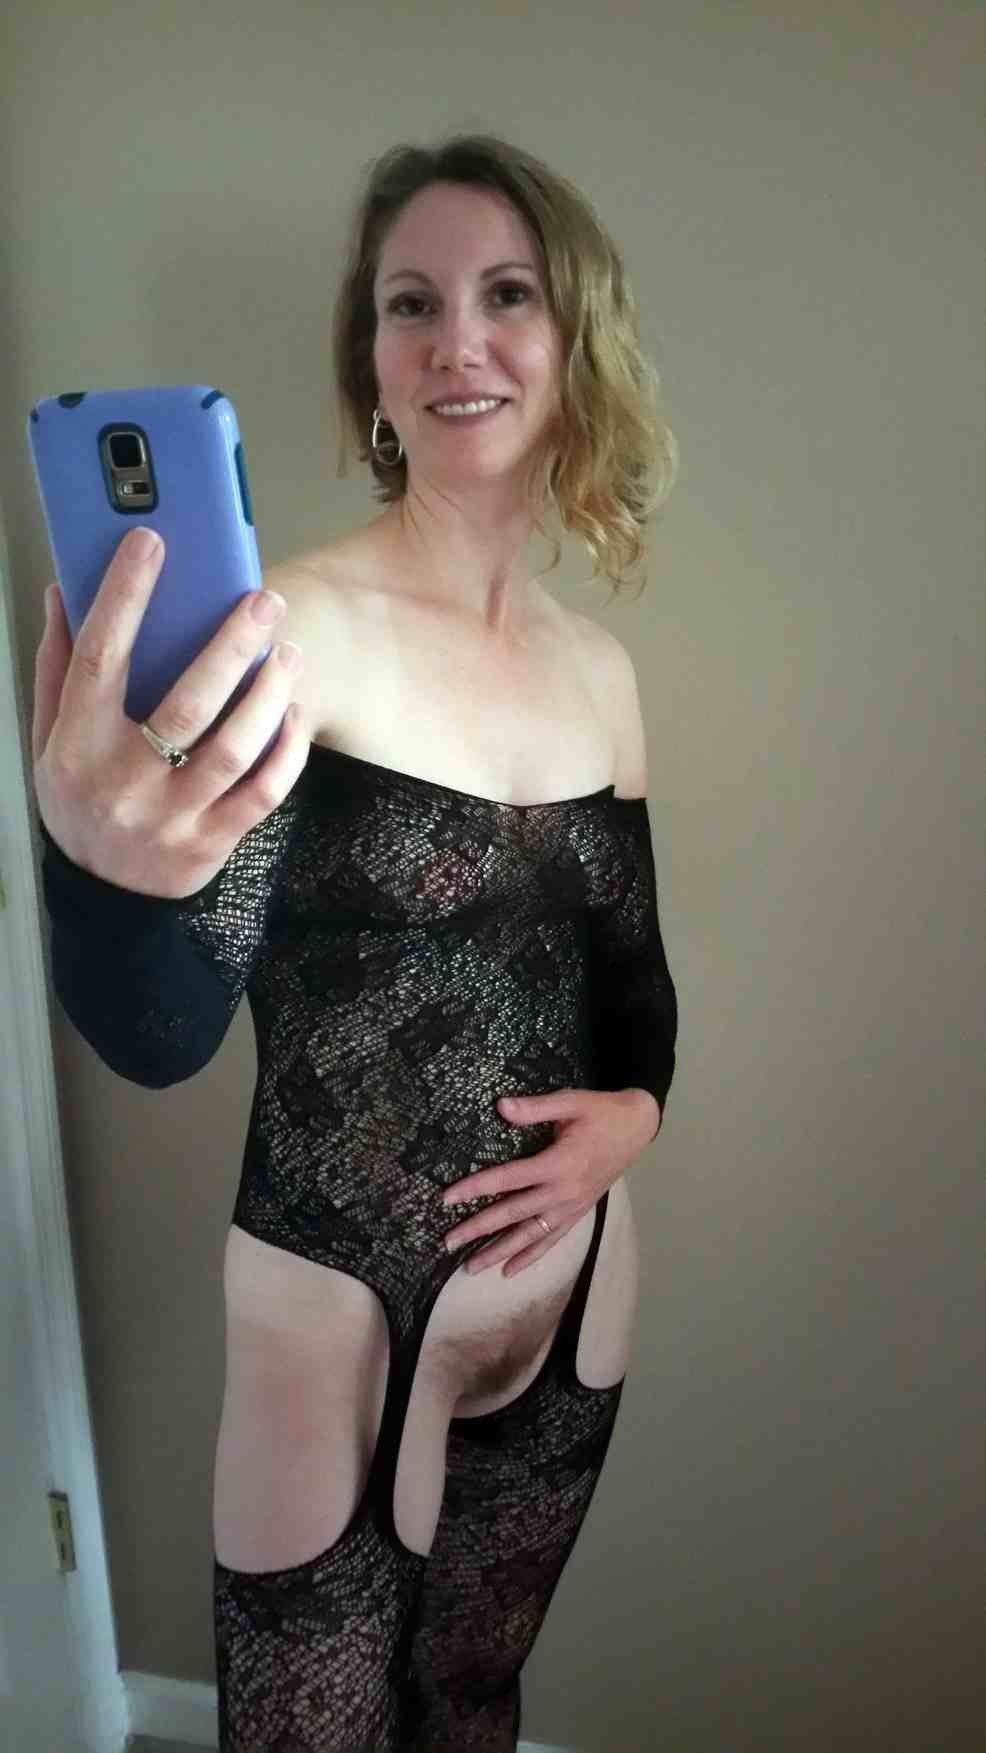 Milf nude selfie at work